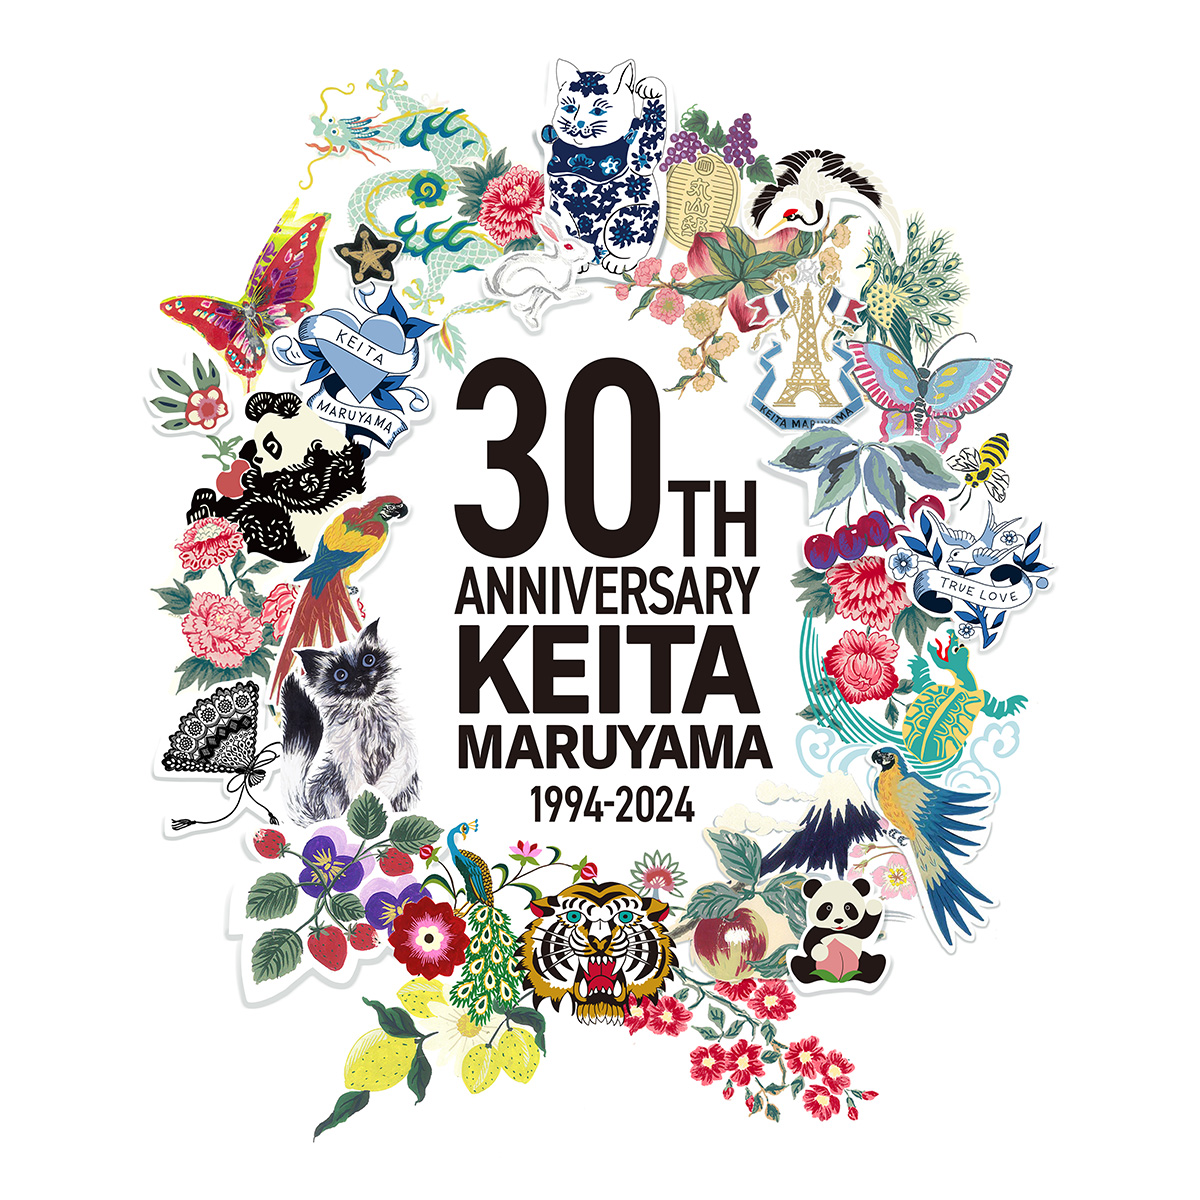 KEITAMARUYAMAが30周年を記念したプロジェクト『丸山百景』を始動！